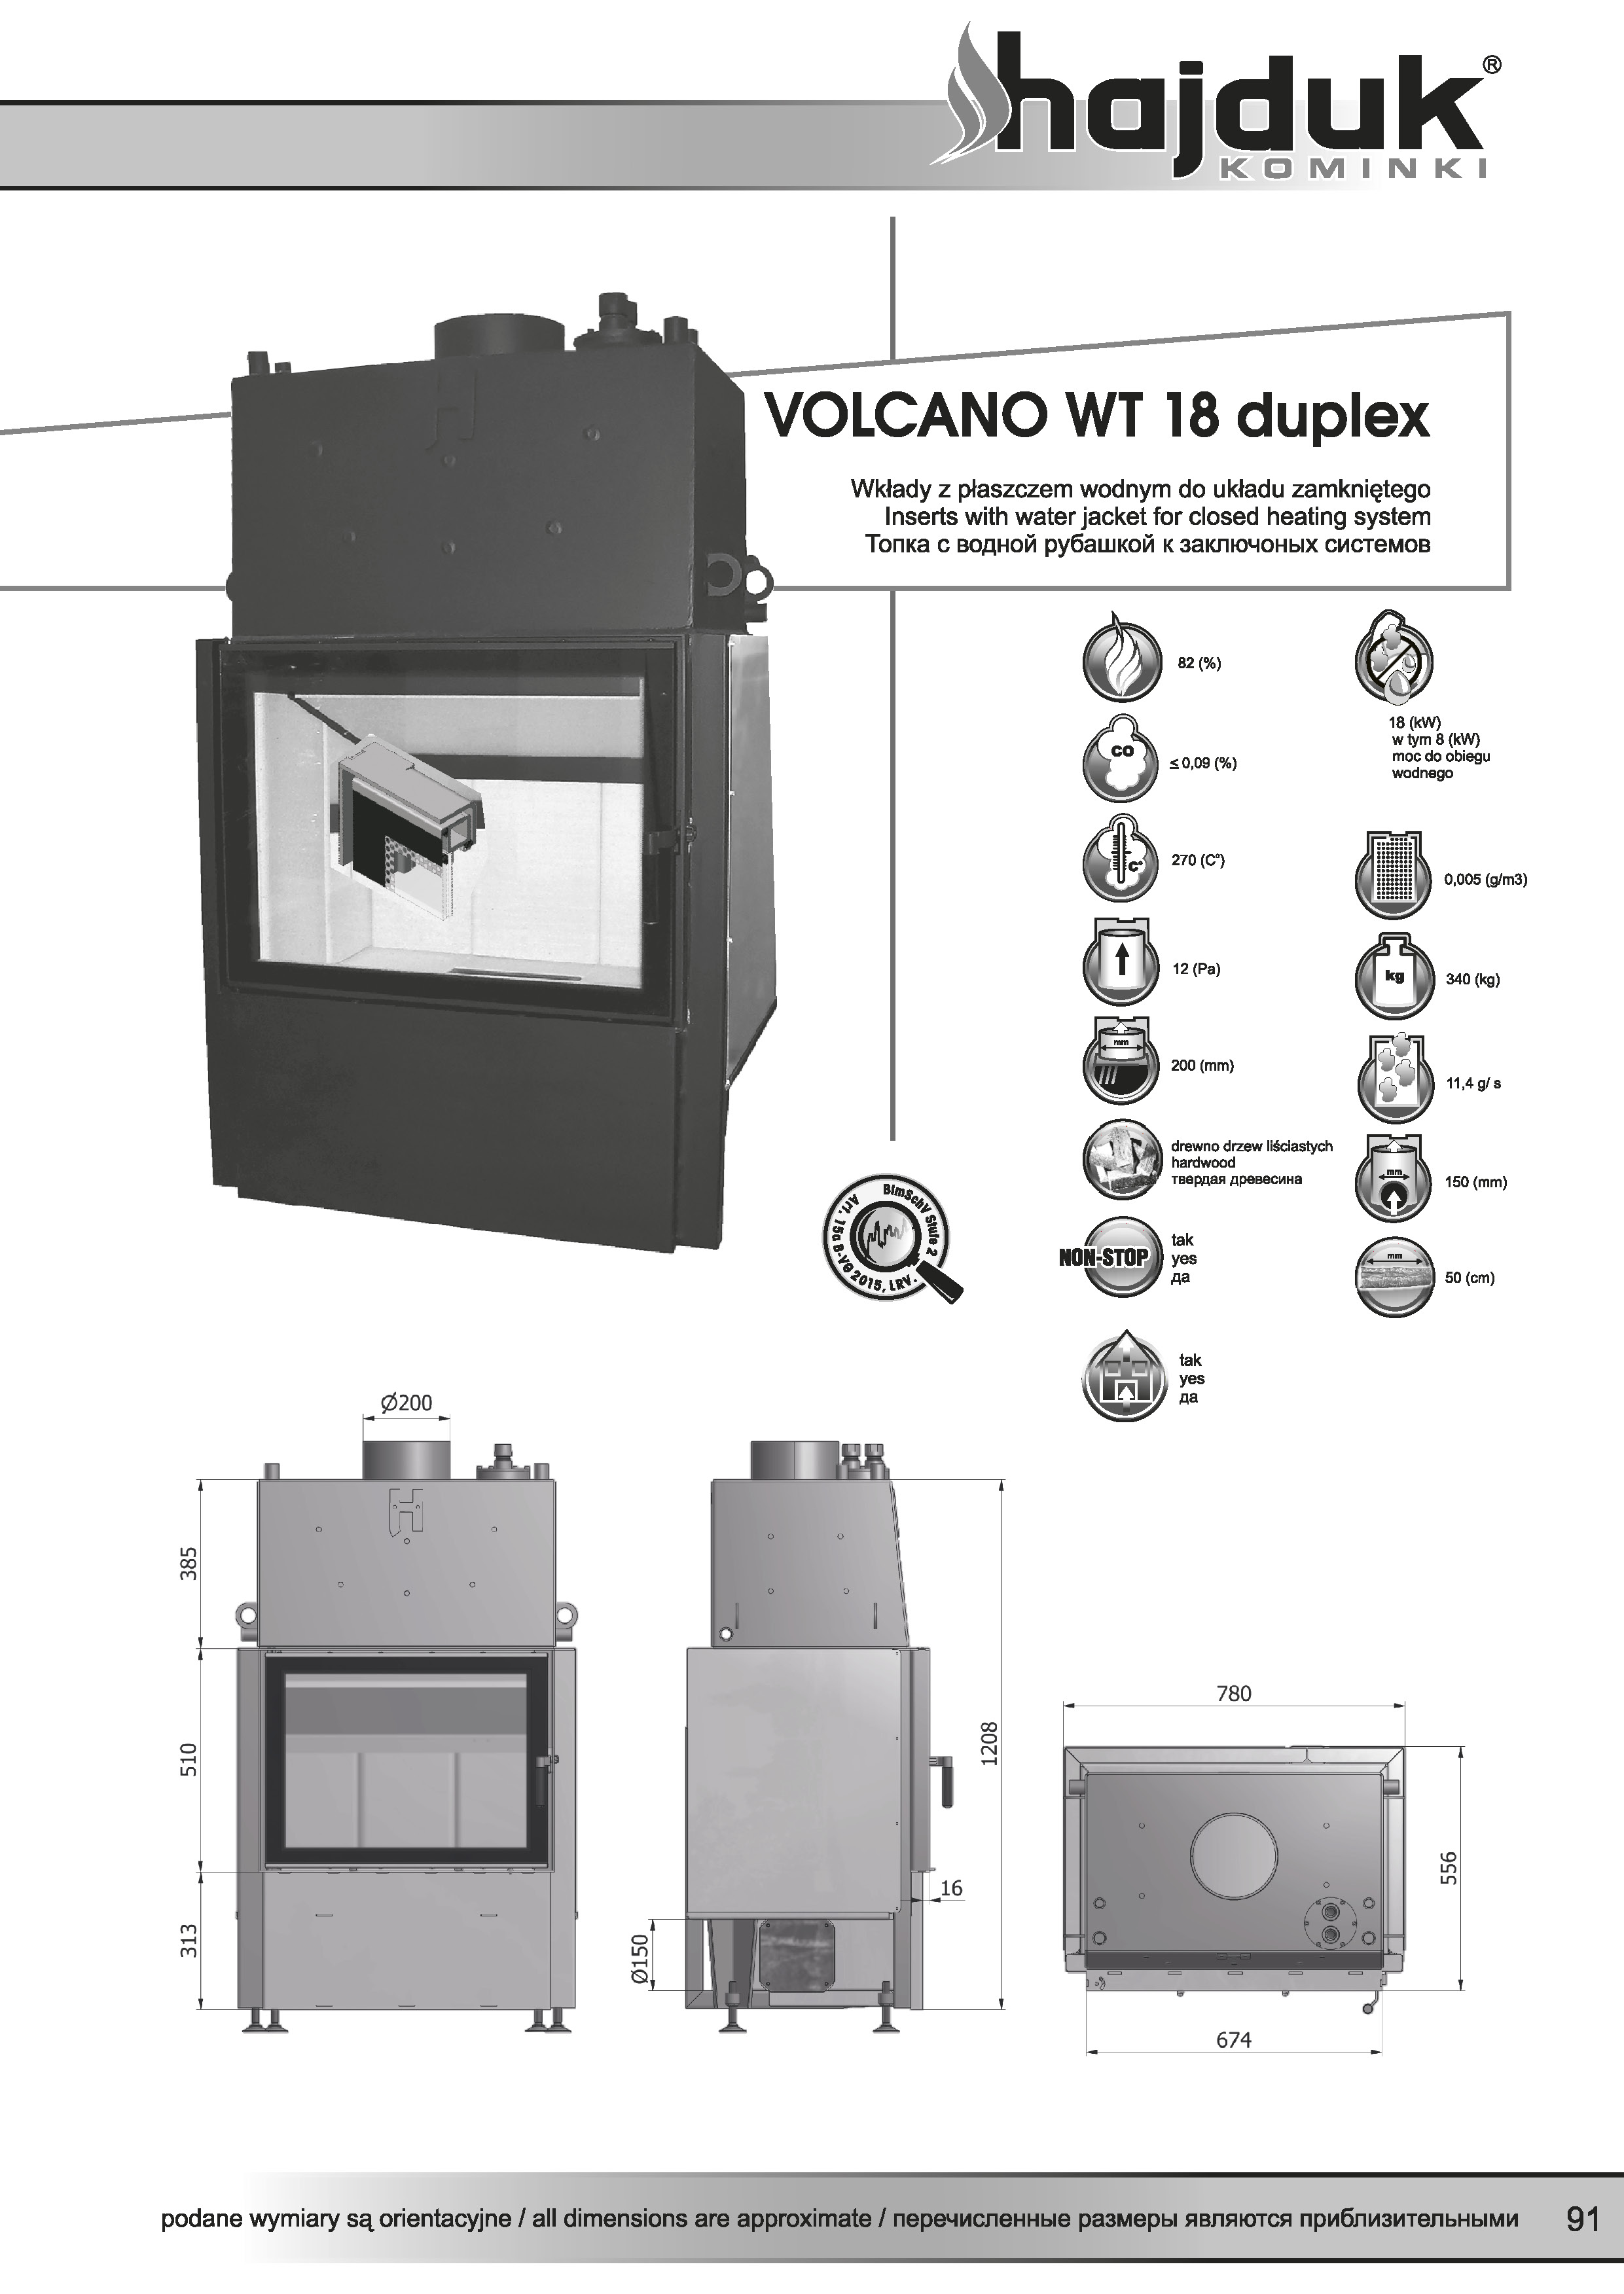 Volcano%20WT 18%20duplex%20 %20karta%20techniczna - Wkład kominkowy Hajduk  Volcano WT 18